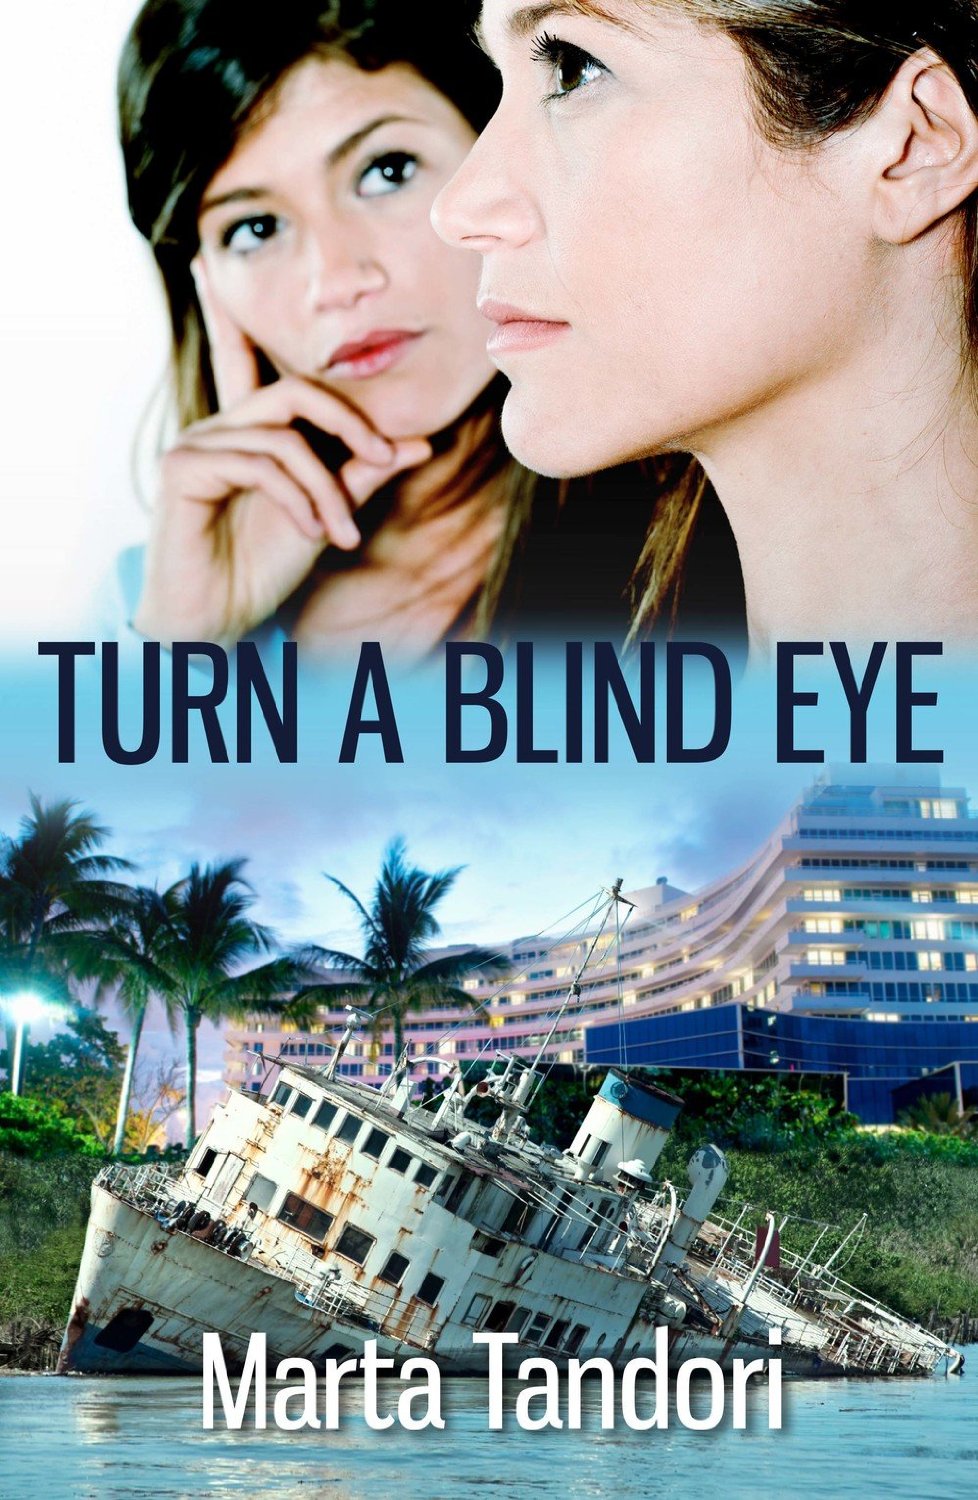 Turn a Blind Eye by Marta Tandori